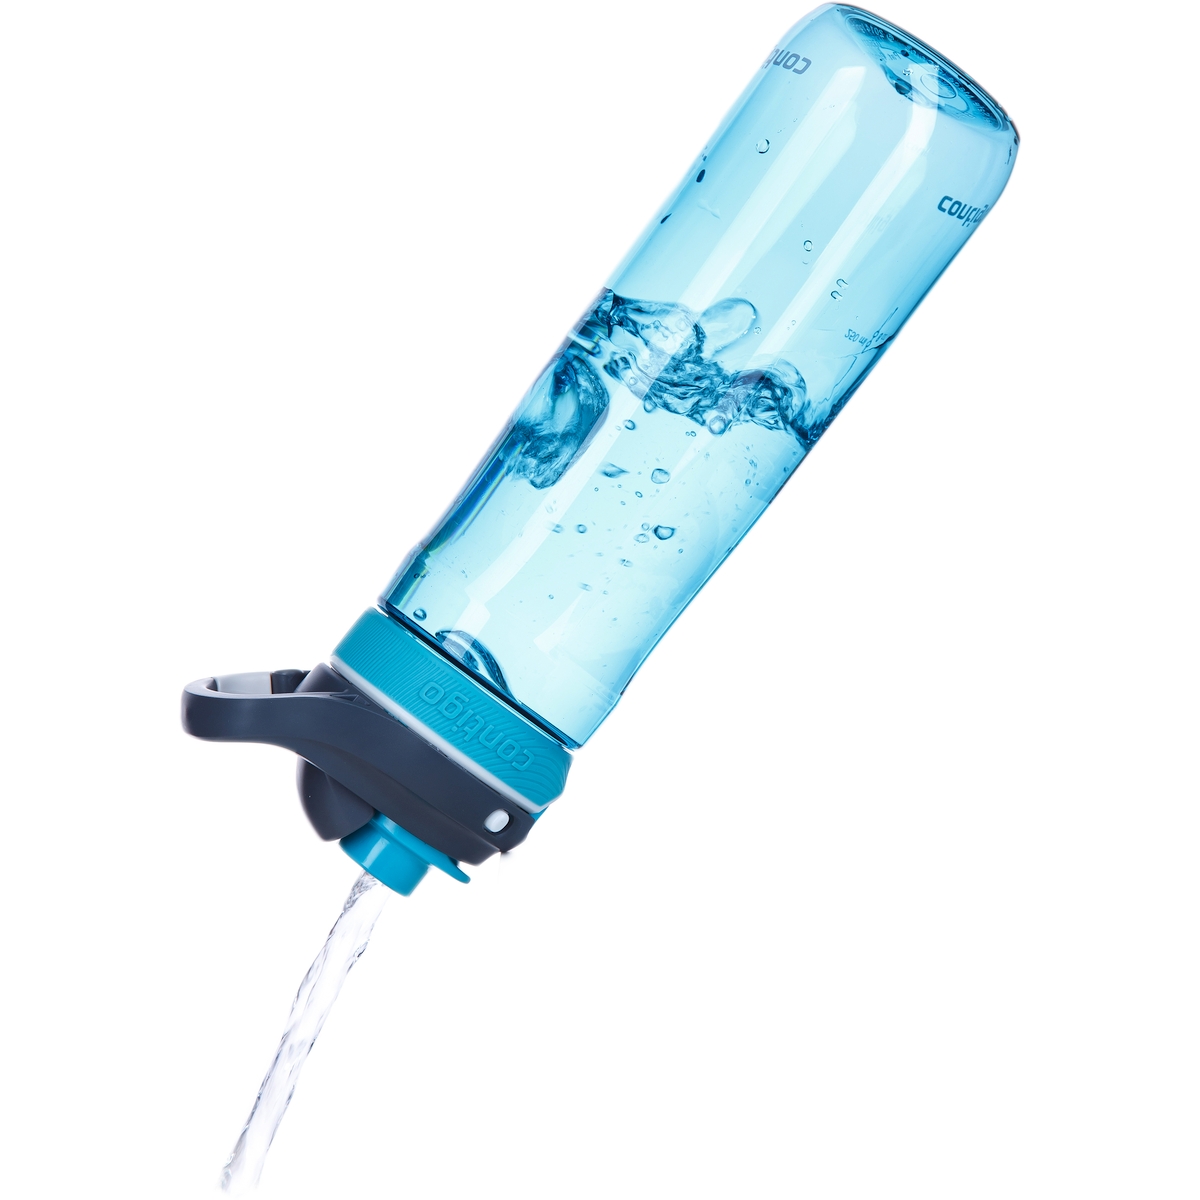 Бутылка для воды Autospout Chug Scuba, 0.72 л (Contigo CONTIGO0763)